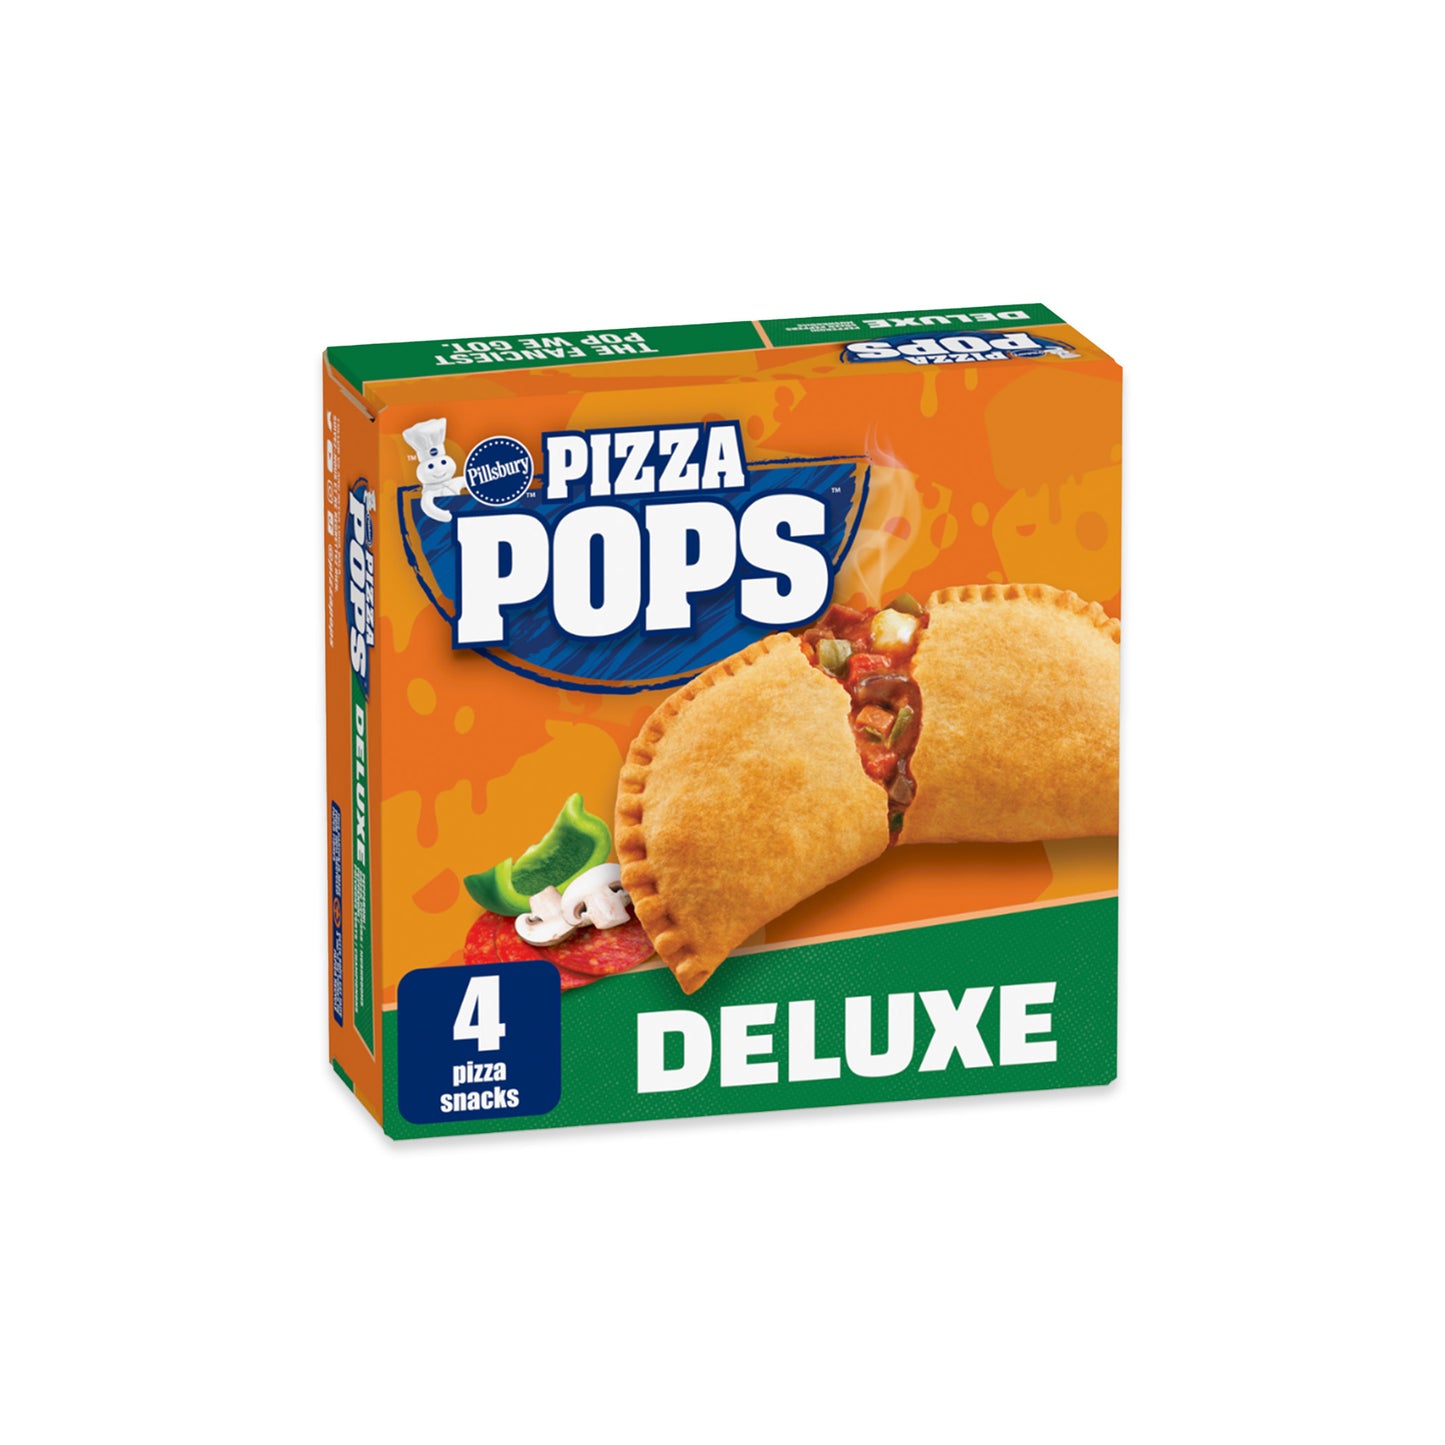 Pizza Pops - Pilsbury (Deluxe)